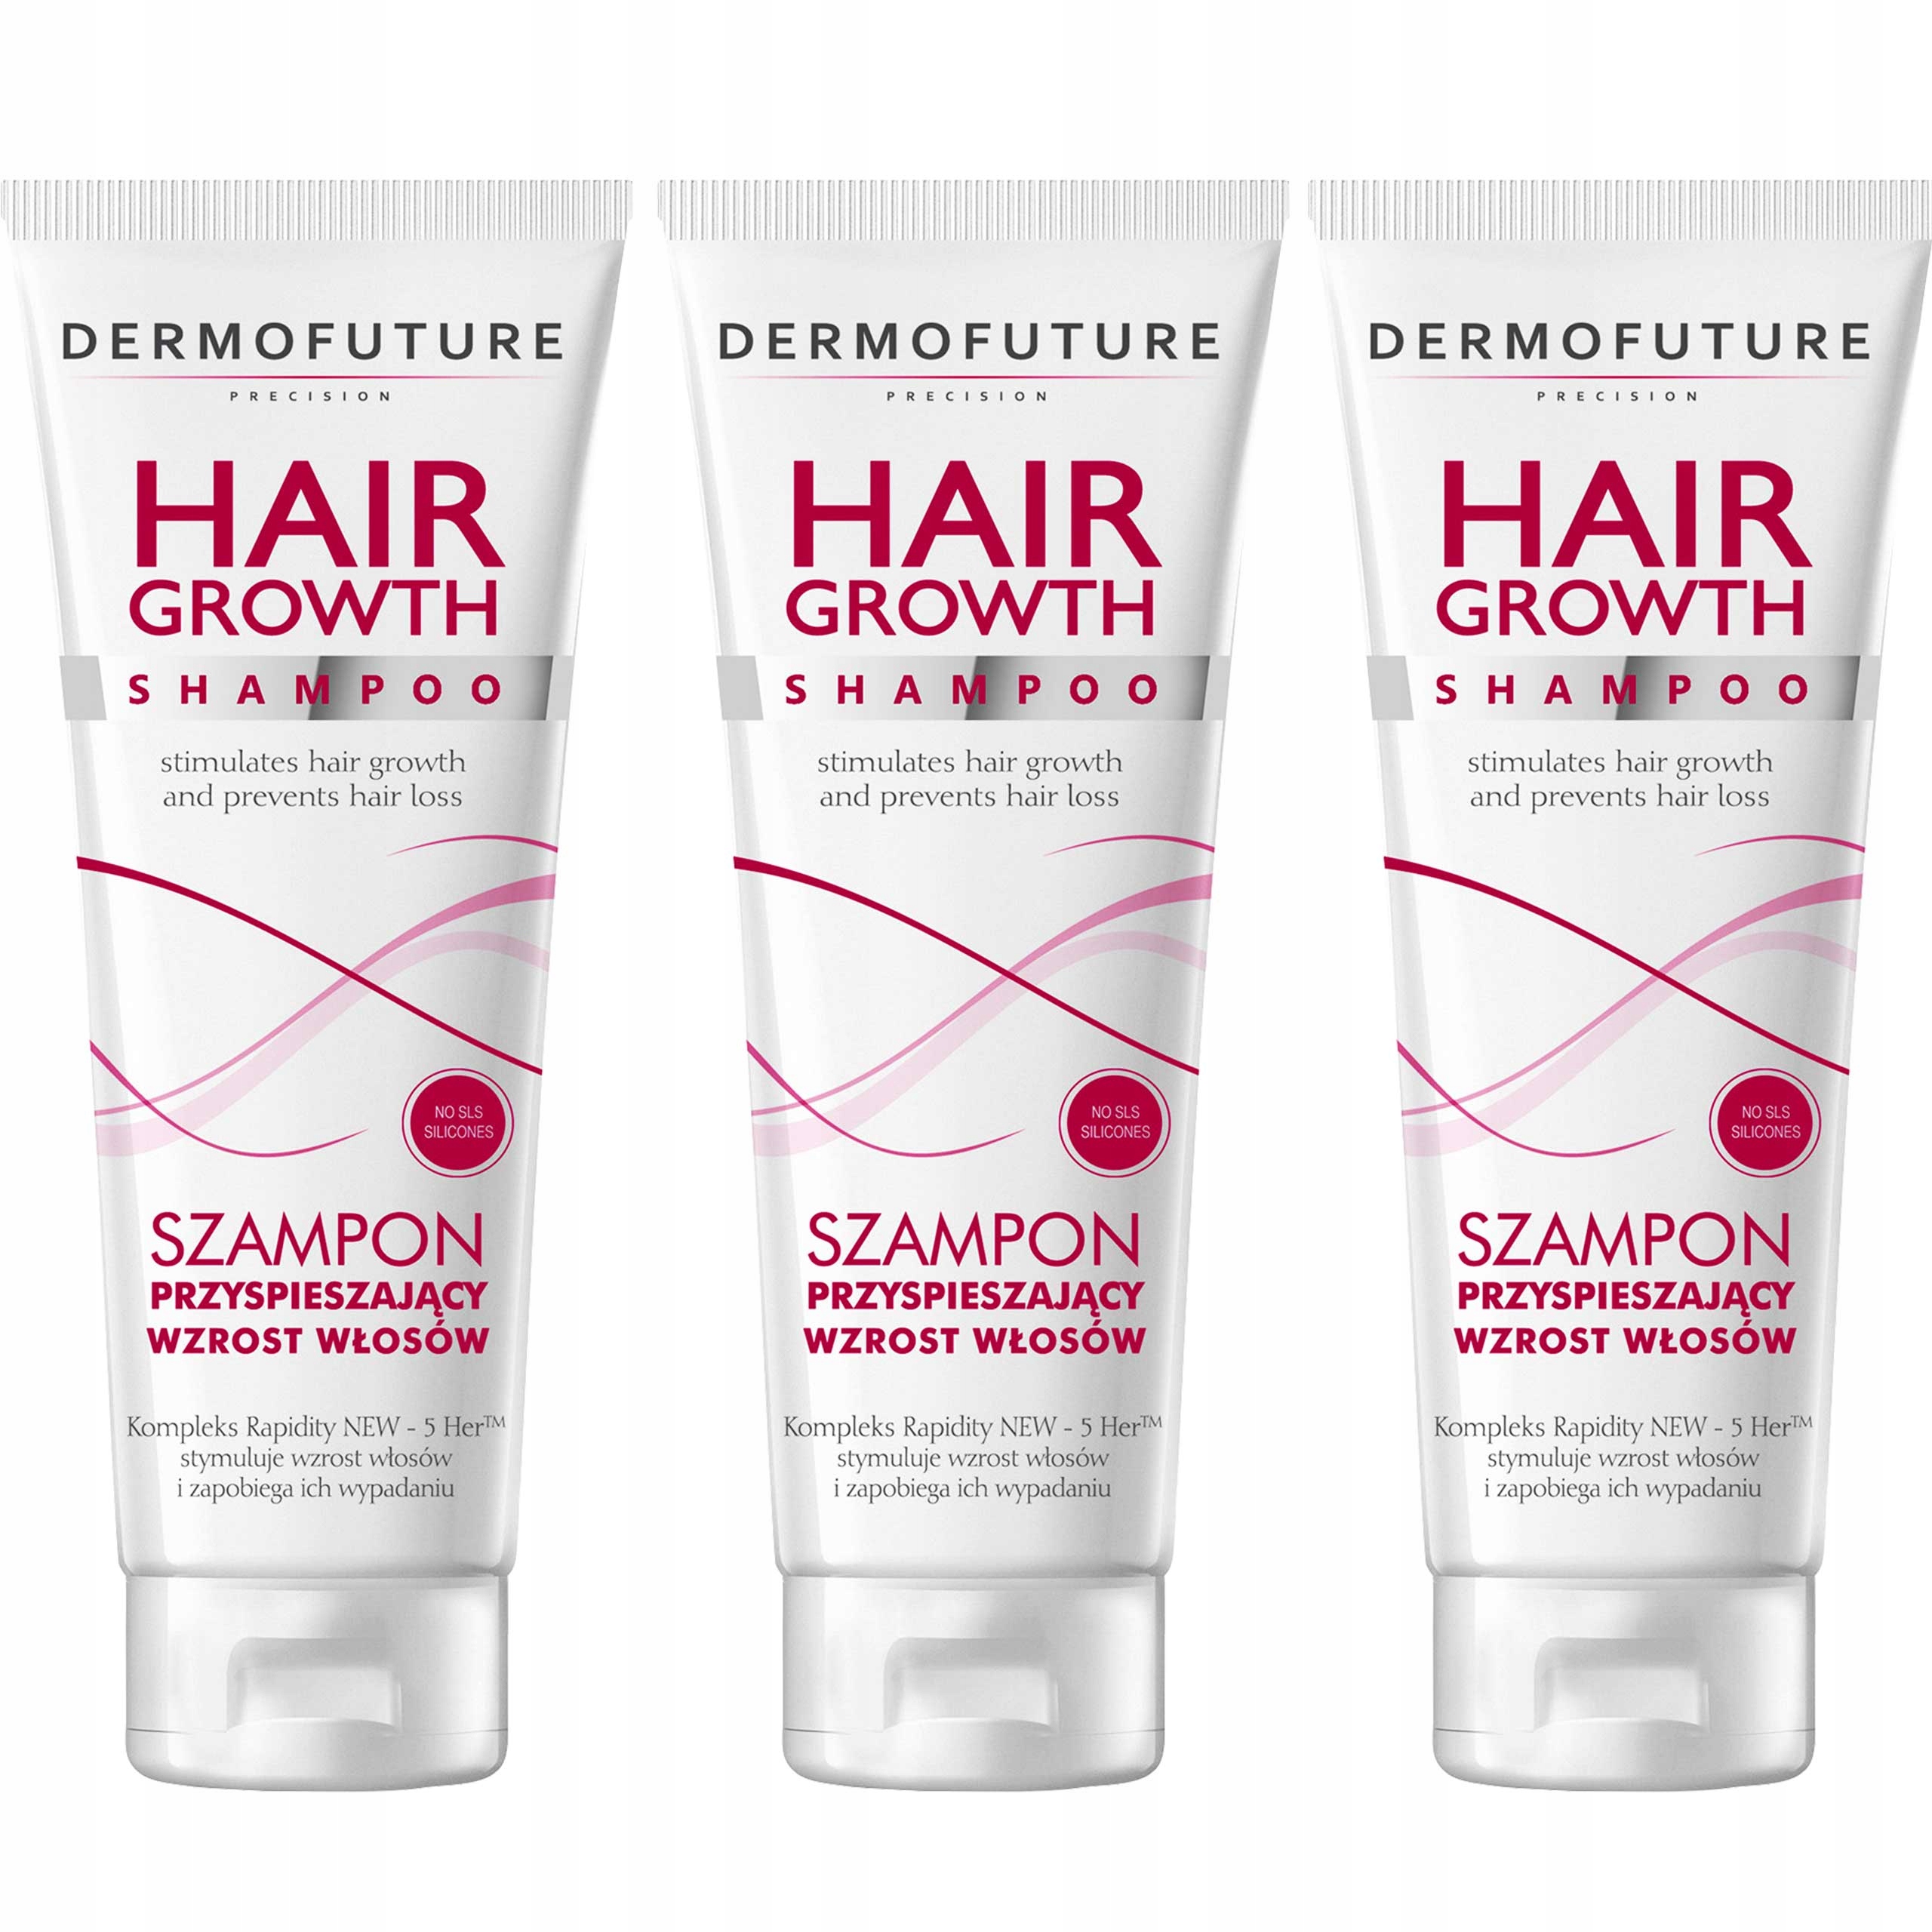 dermofuture szampon przyśieszający wzrost wizaz